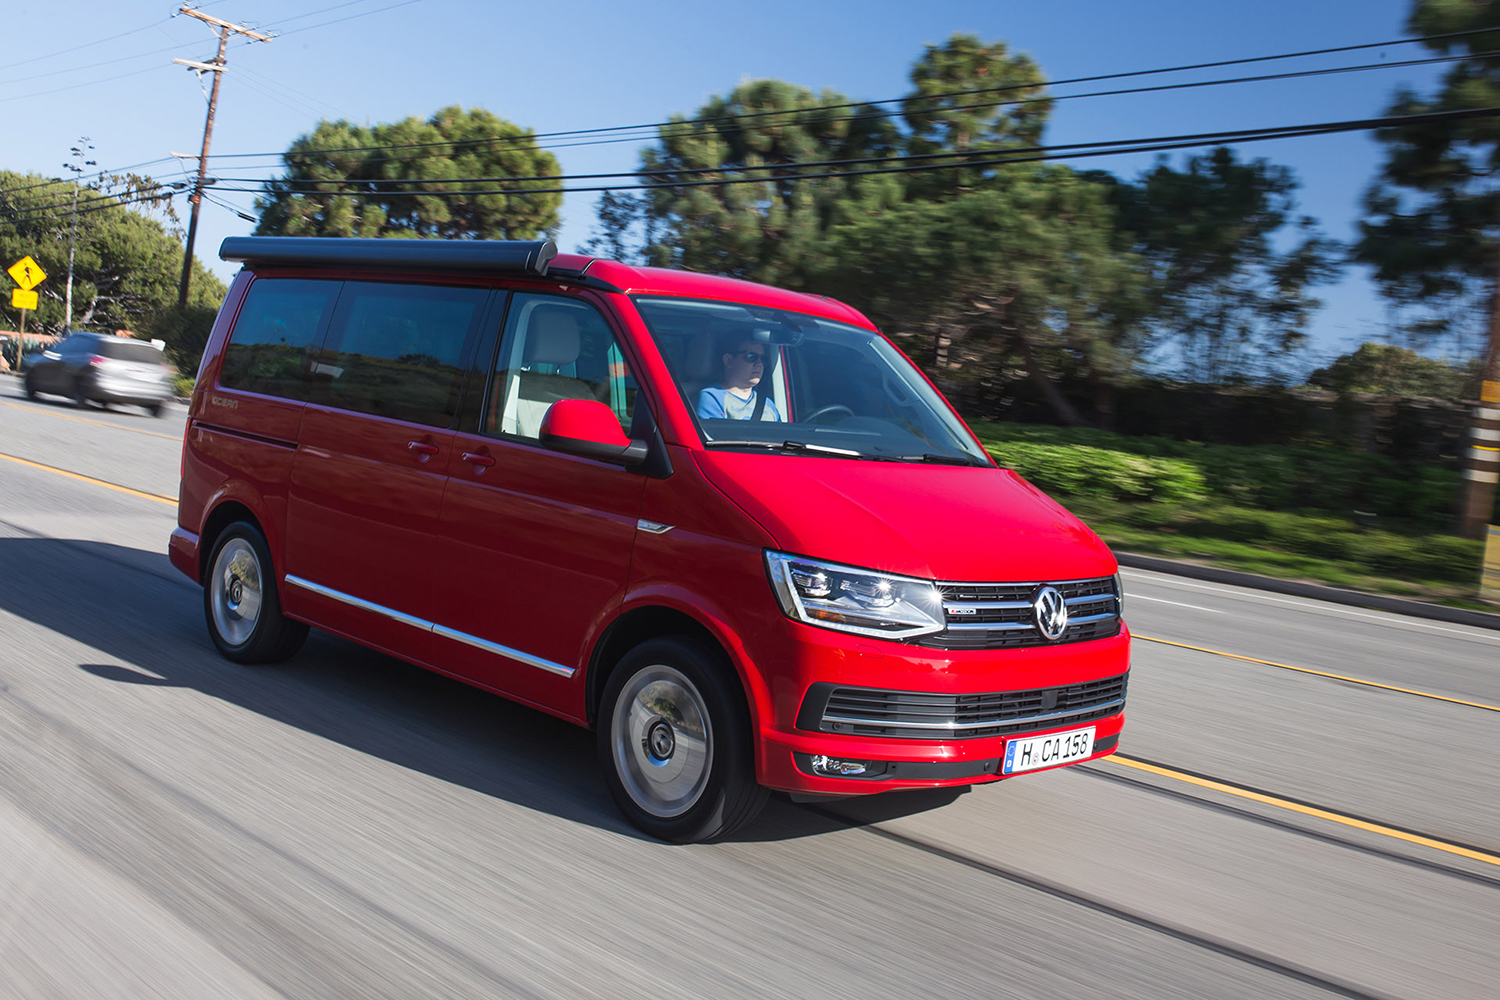 Apple's Self-driving Employee Shuttle to Use Volkswagen Vans